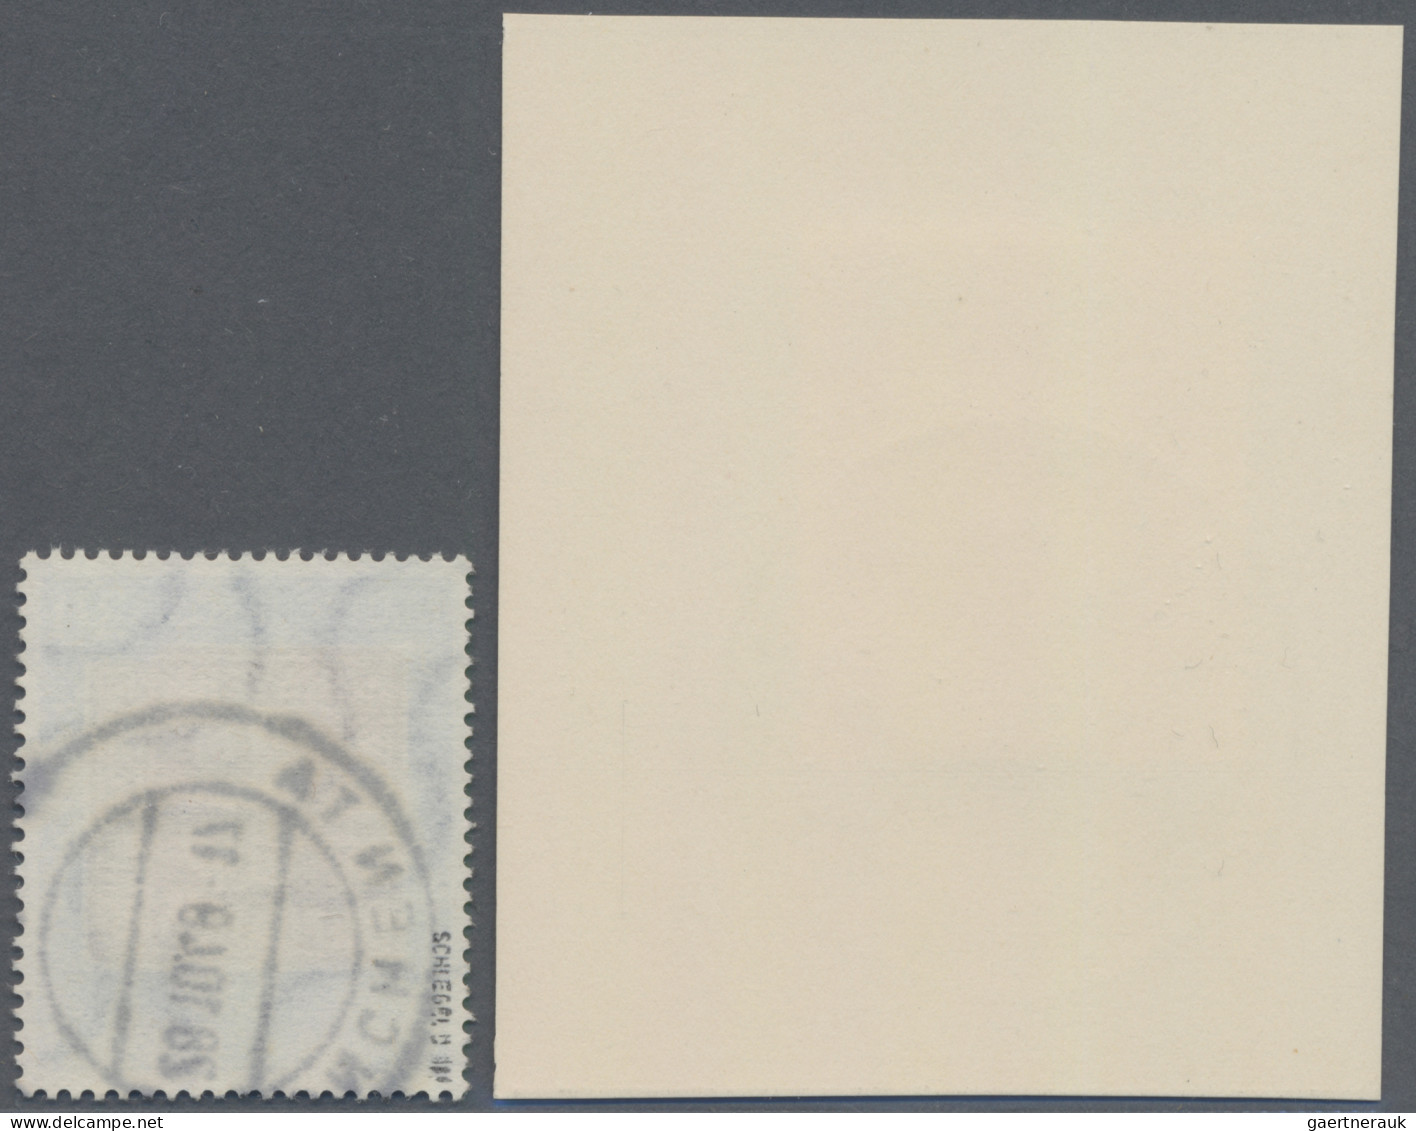 Bundesrepublik Deutschland: 1949, 30 Pfg. 100 Jahre Deutsche Briefmarken, Platte - Gebraucht